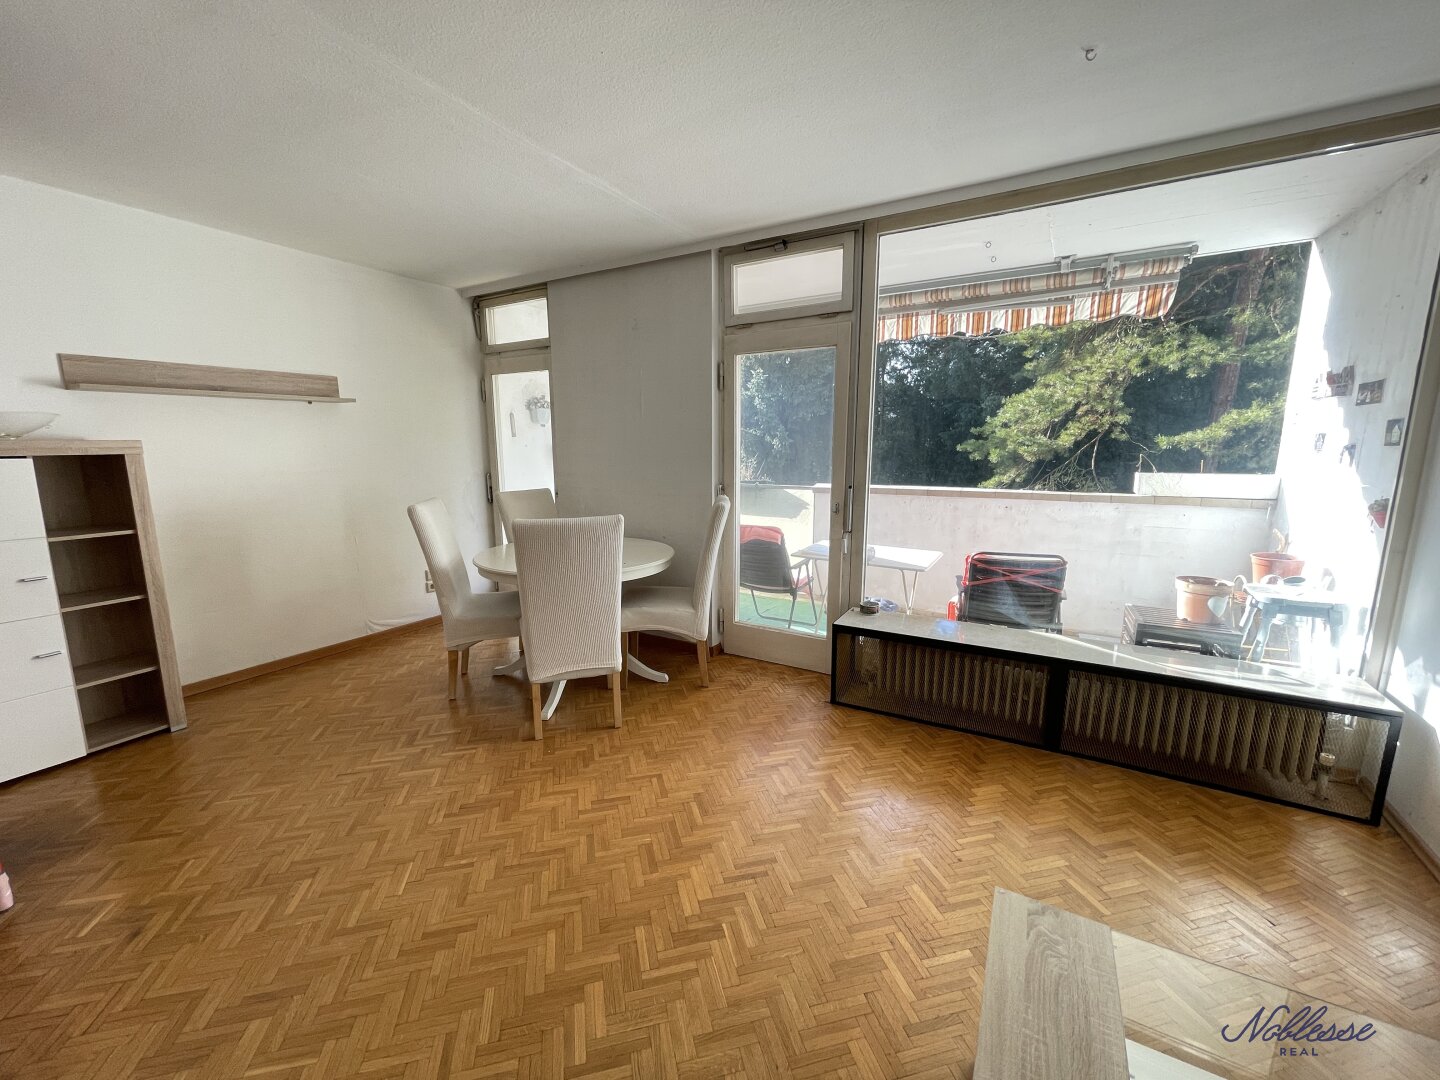 Miete oder Kauf - Möblierte 3-Zimmer-Wohnung Nähe Ernst Fuchs Museum!